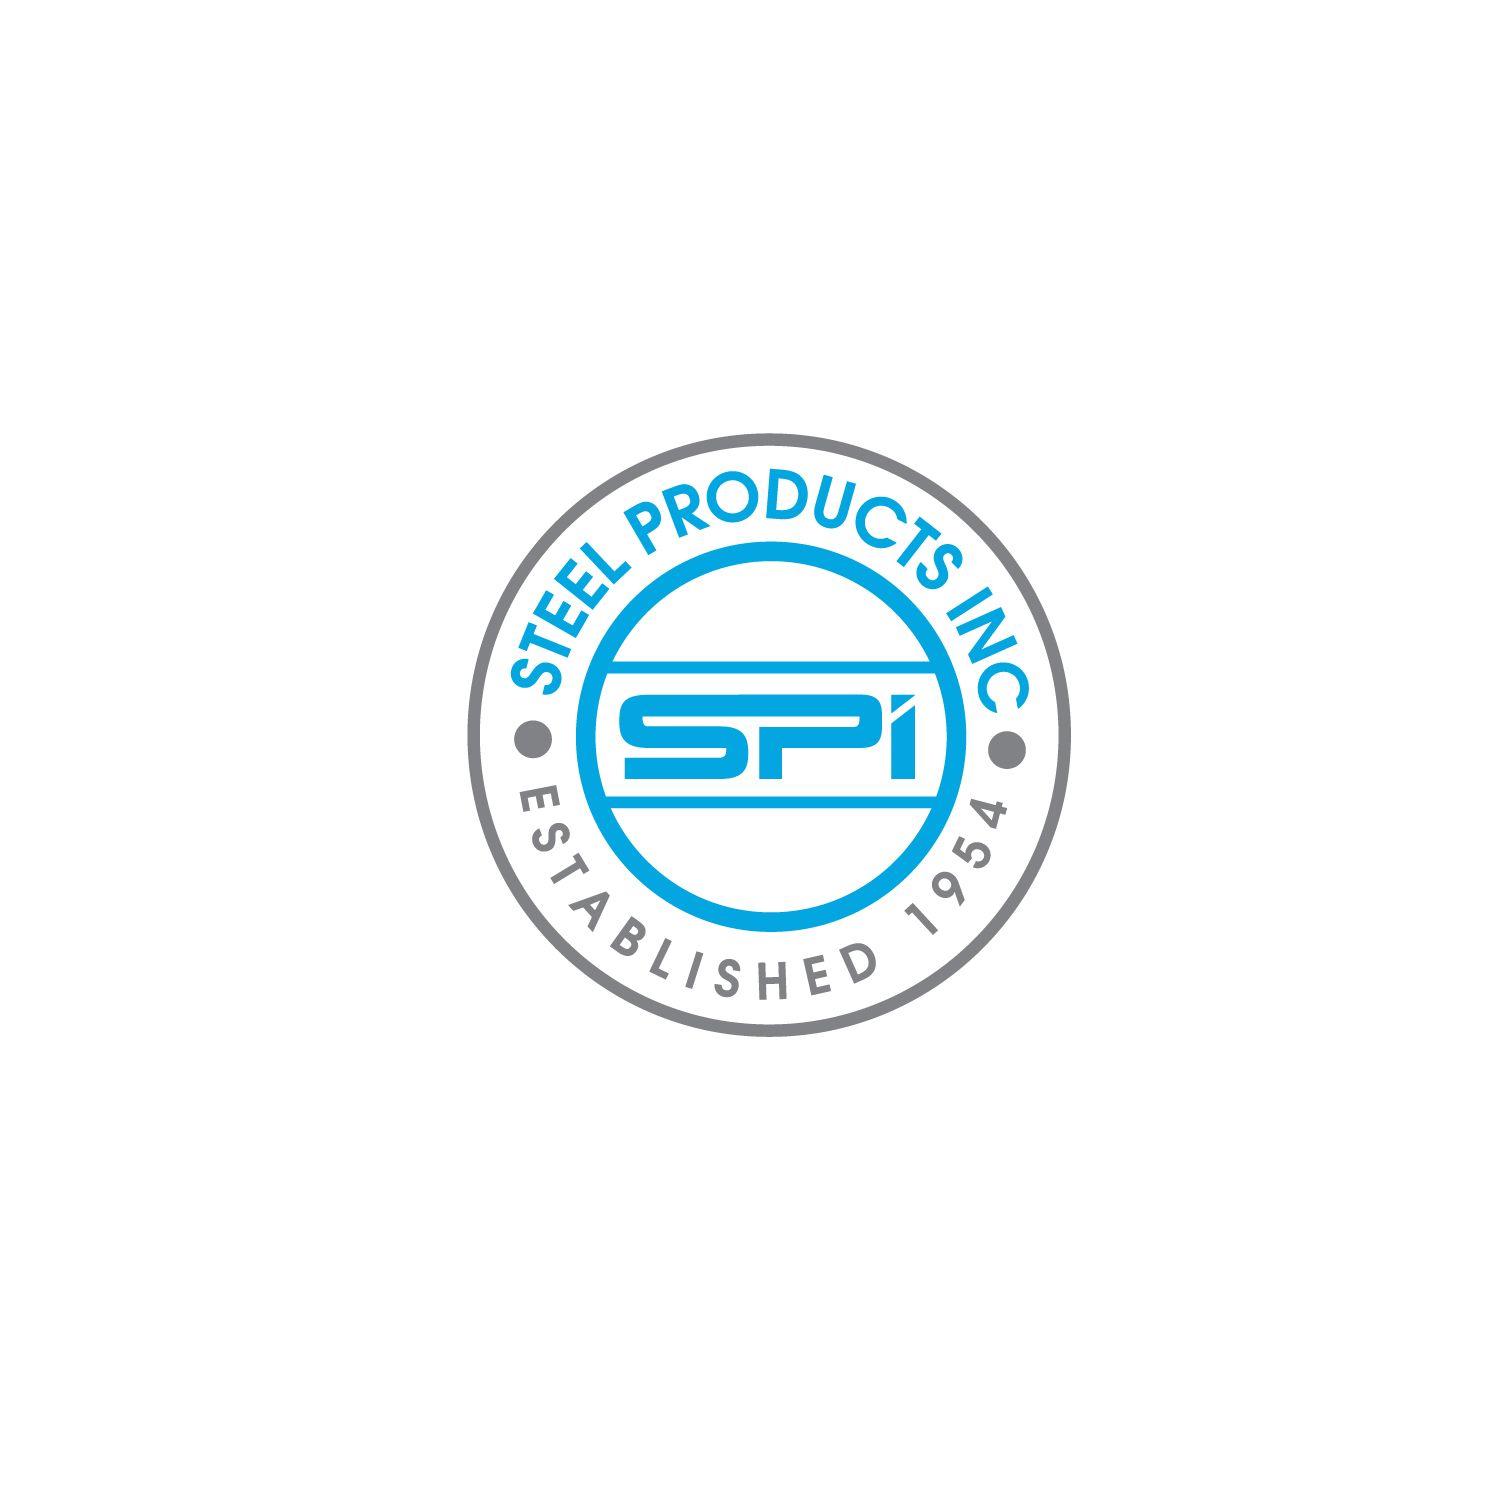 Established Logo - Modern, Professional Logo Design for Steel Products Inc